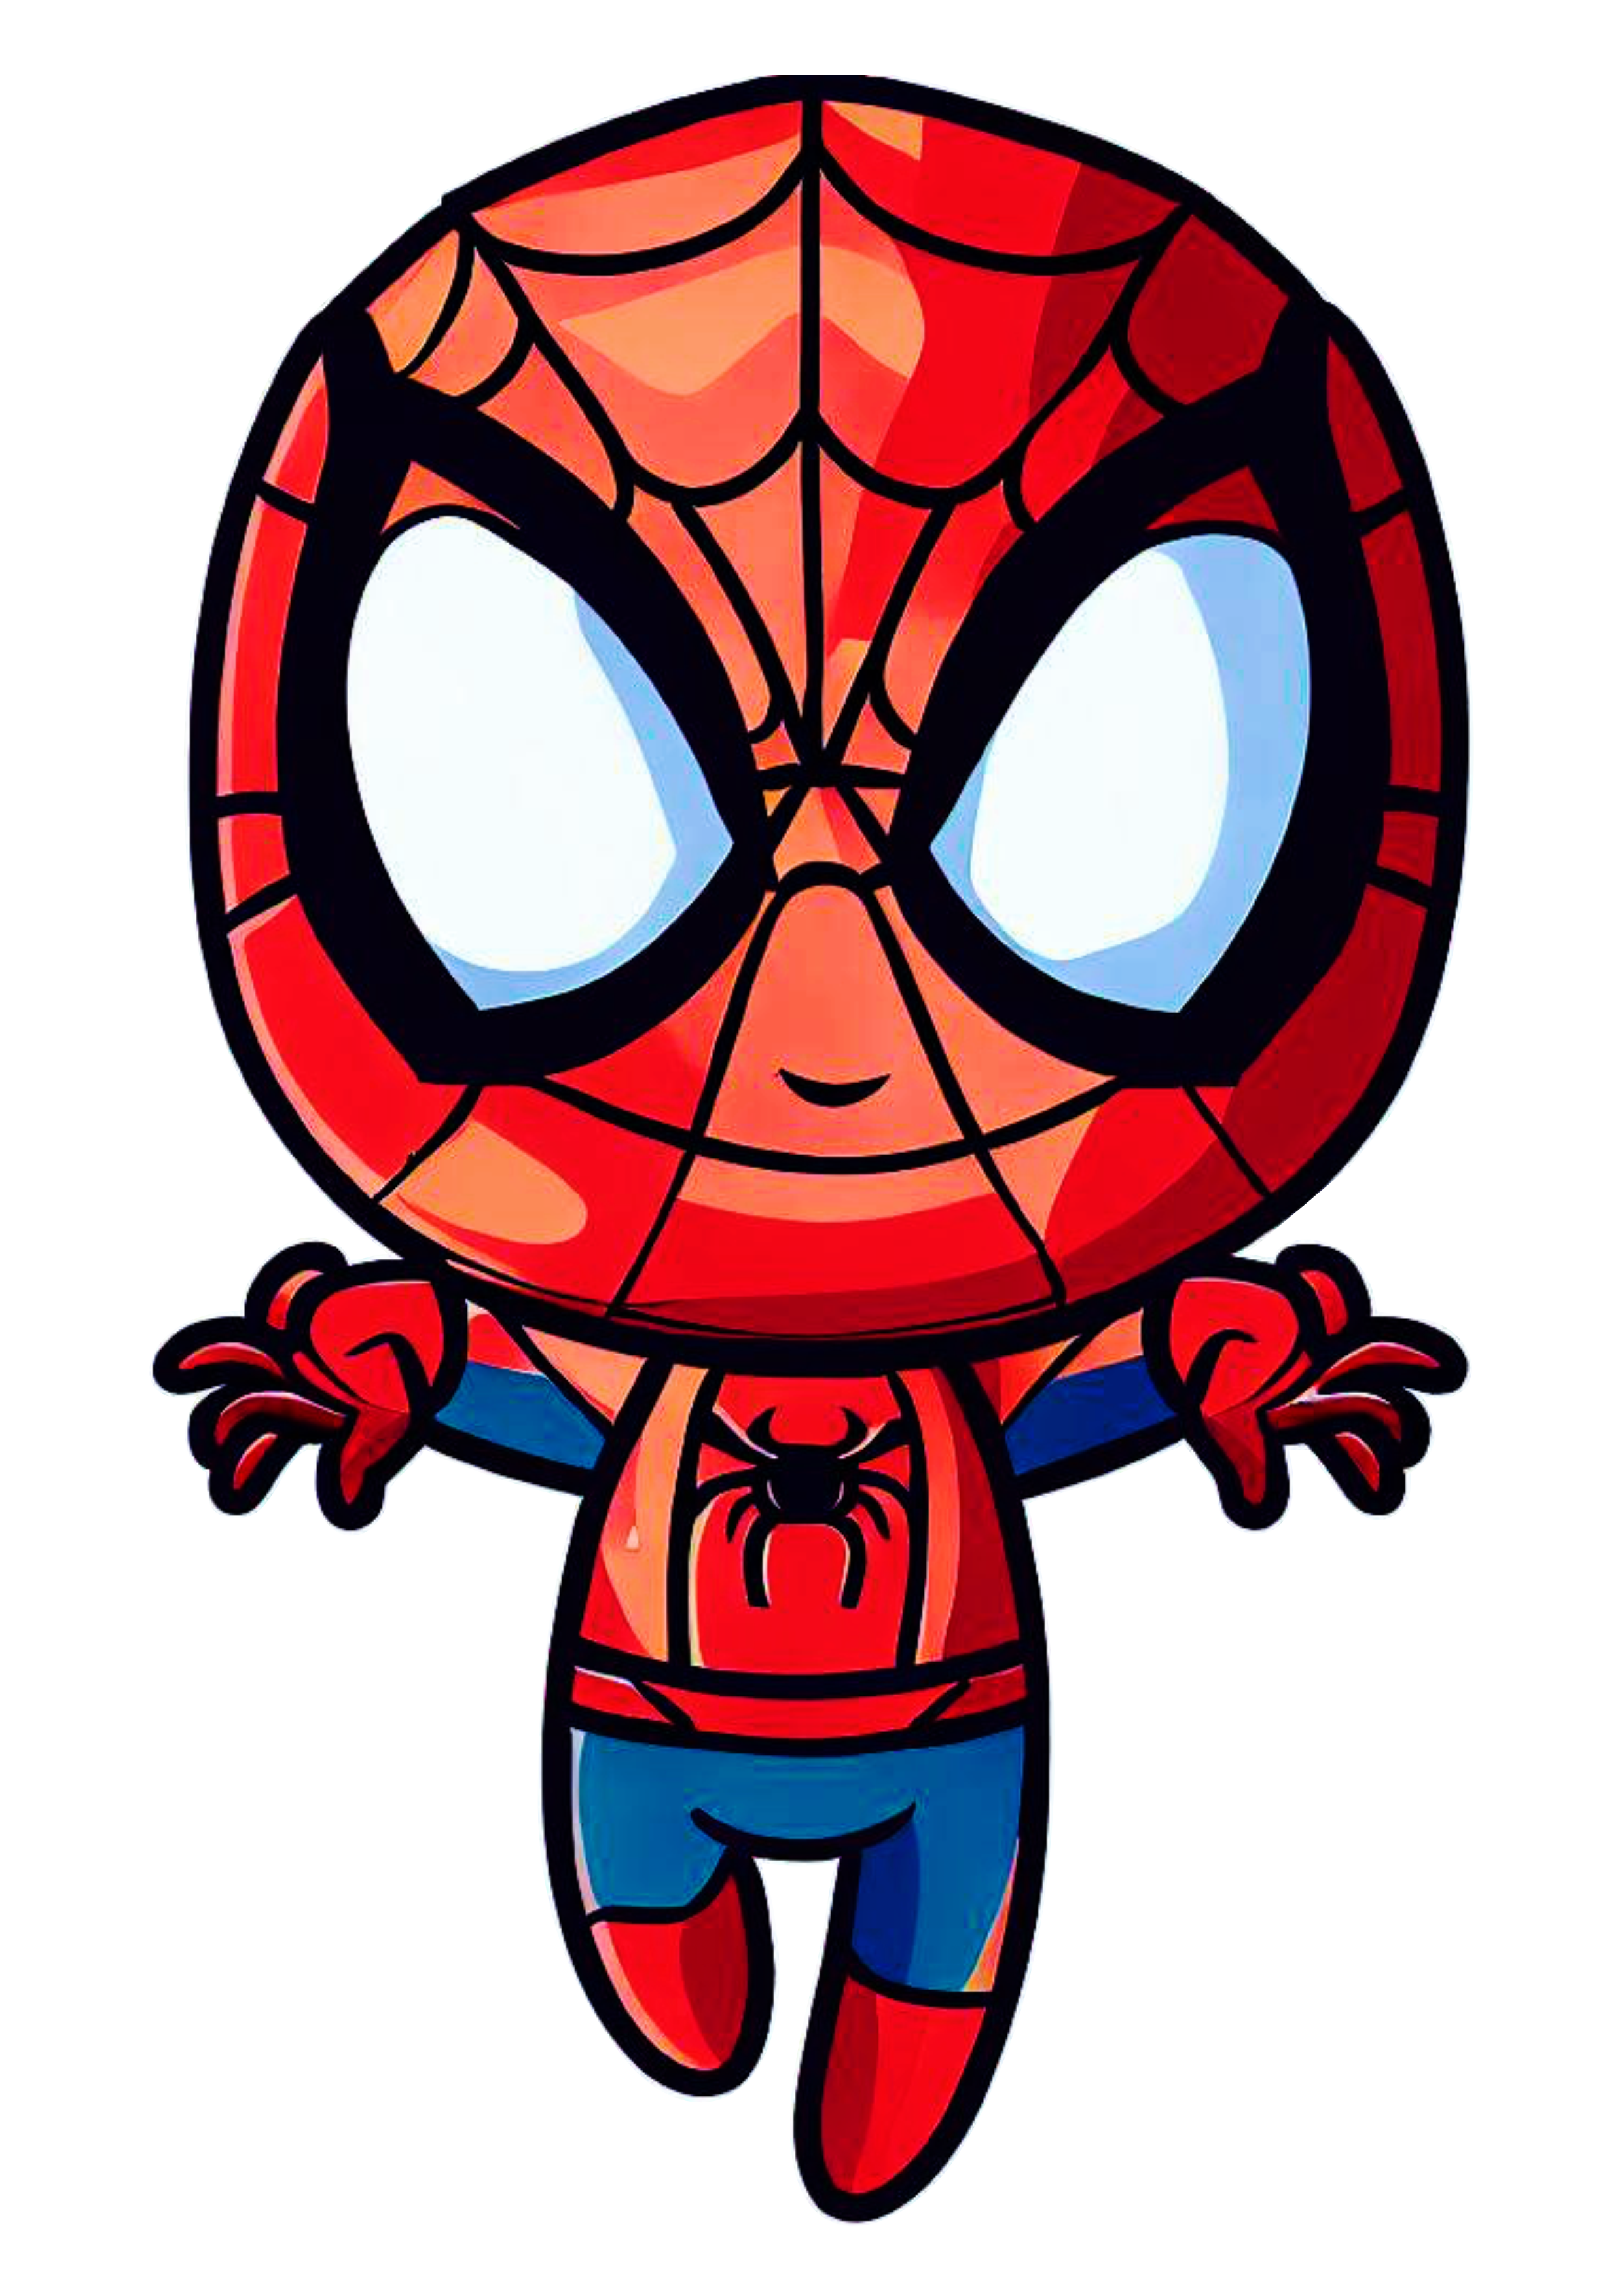 Homem aranha cute spider man ultimate baby ilustração Marvel universe quadrinhos fantasia infantil caricatura Peter Parker cartoon png